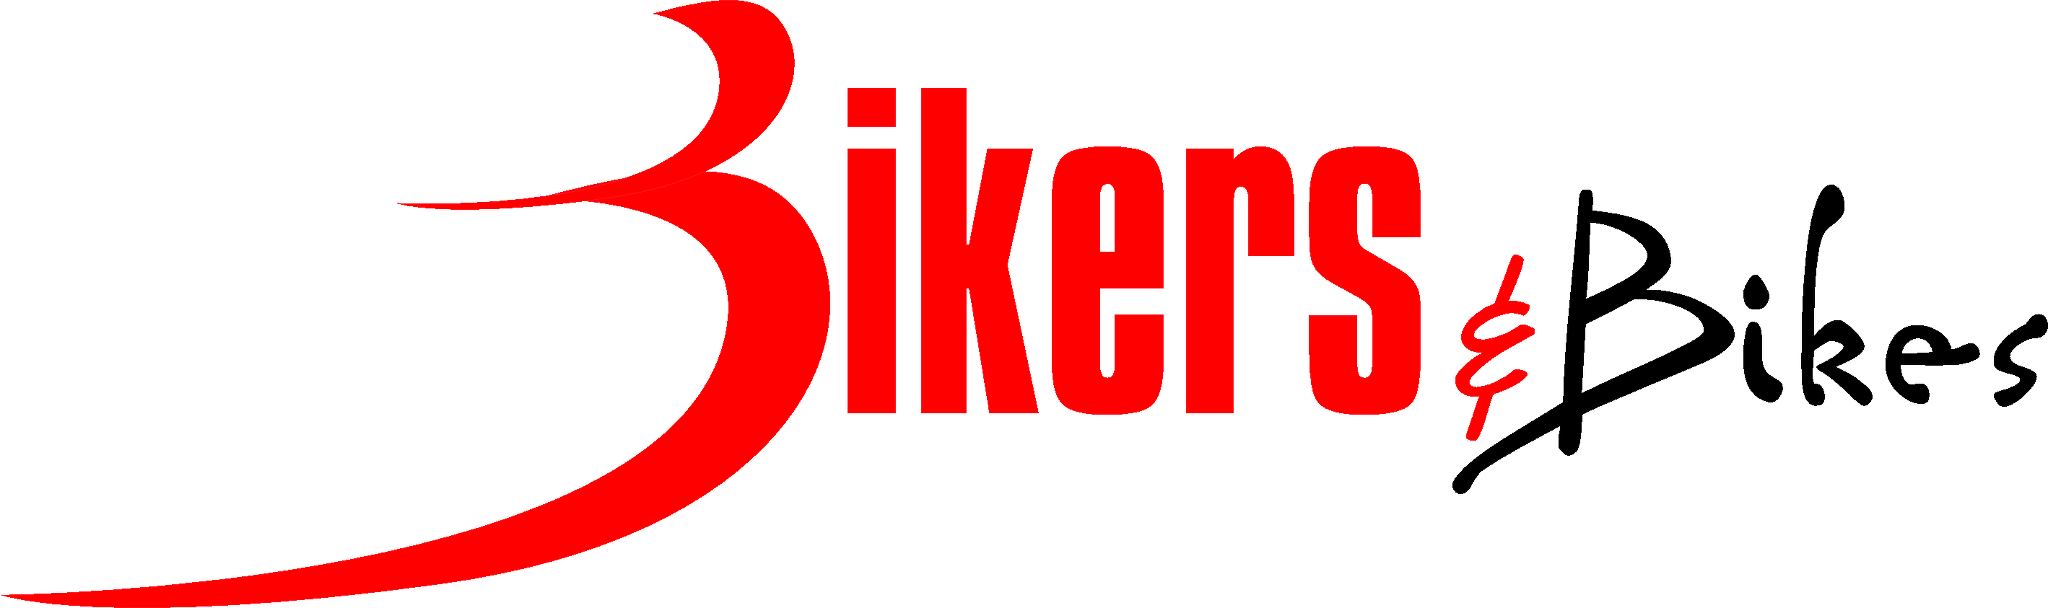 Bikers and Bikes